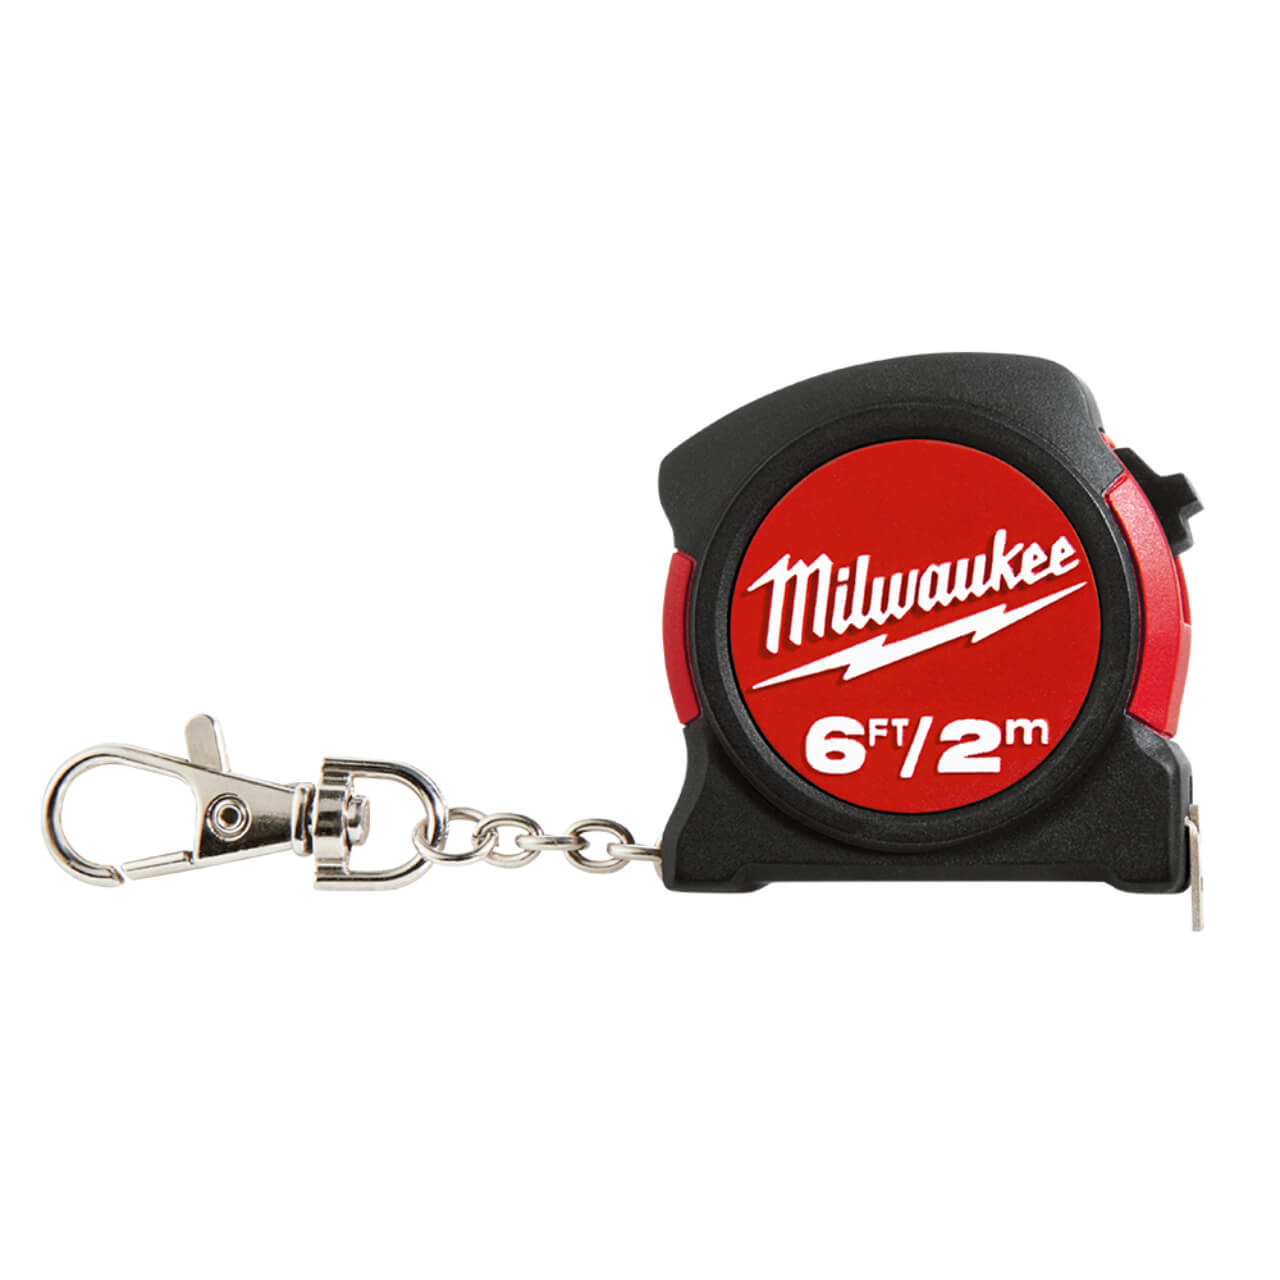 Milwaukee 2m/6ft Keychain Tape Measure